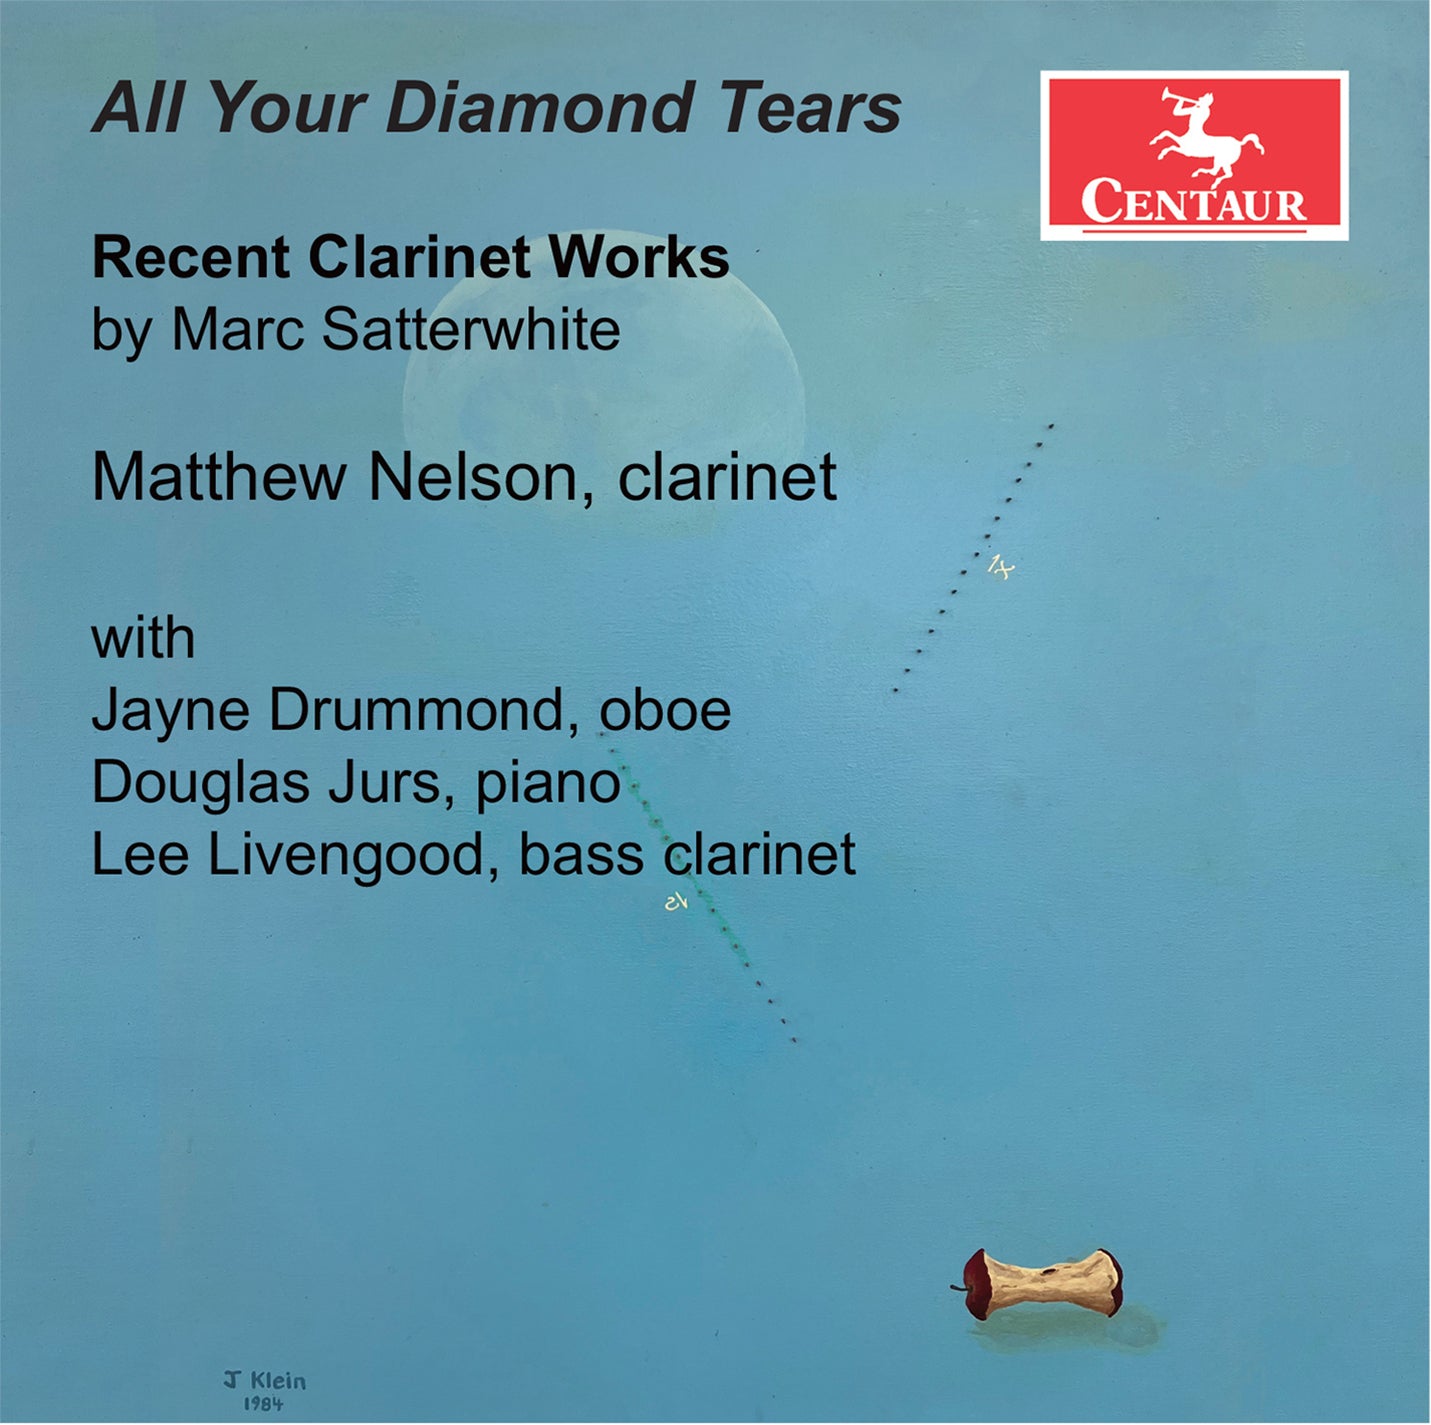 Store Diamond Tears – Store Diamond tears